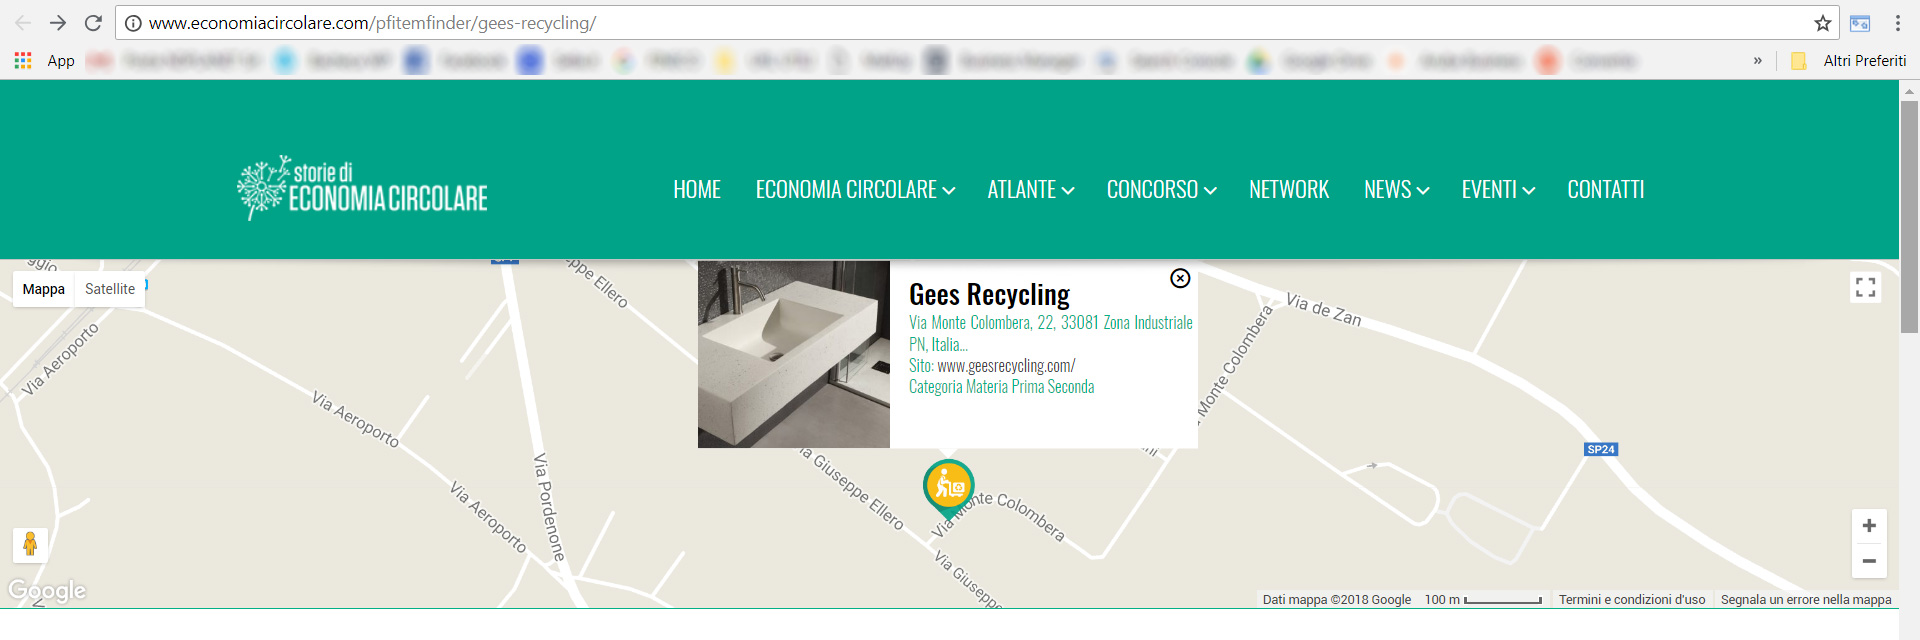 Gees Recycling è nell'atlante italiano dell'economia circolare